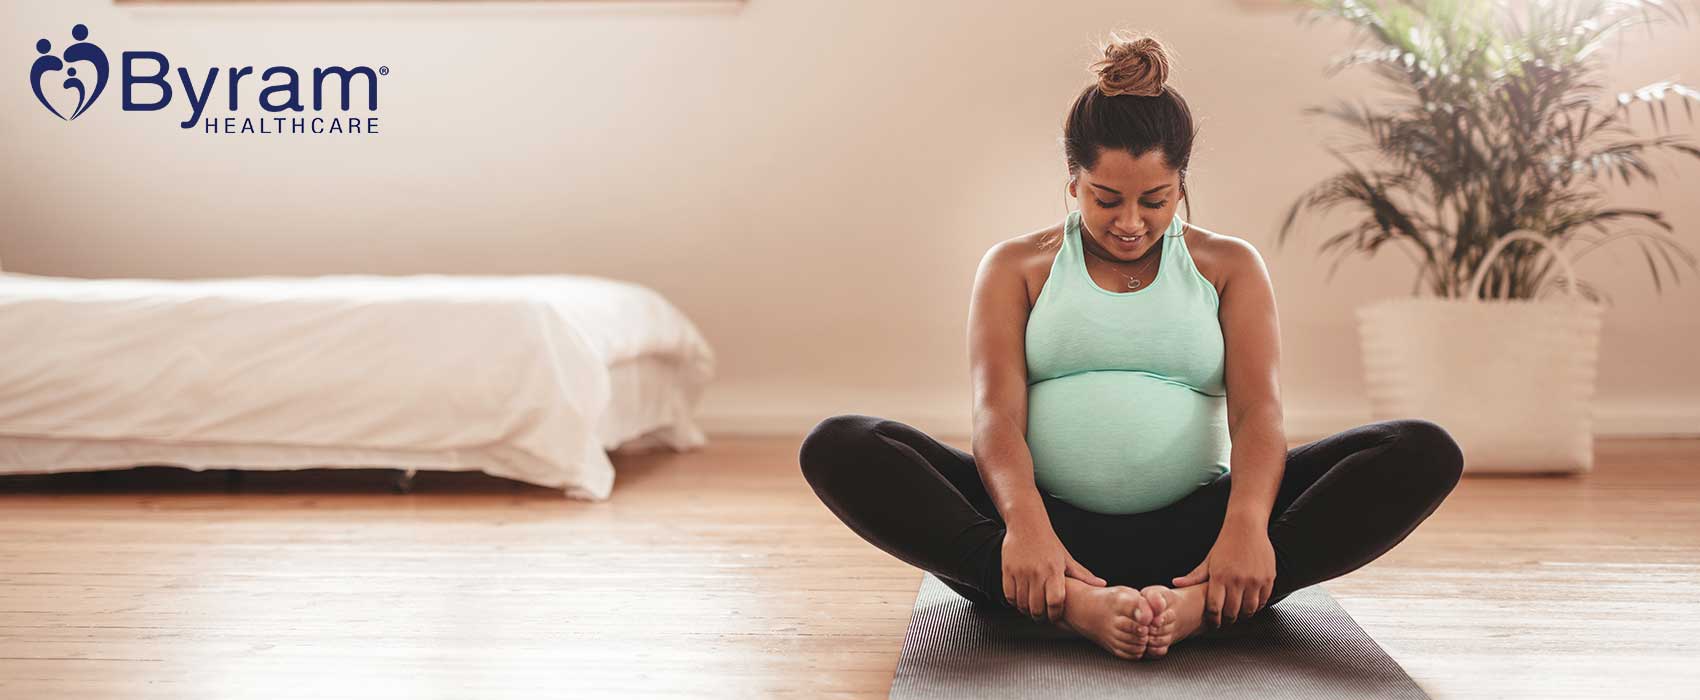 Mujer embarazada estirándose como preparación para dar a luz.